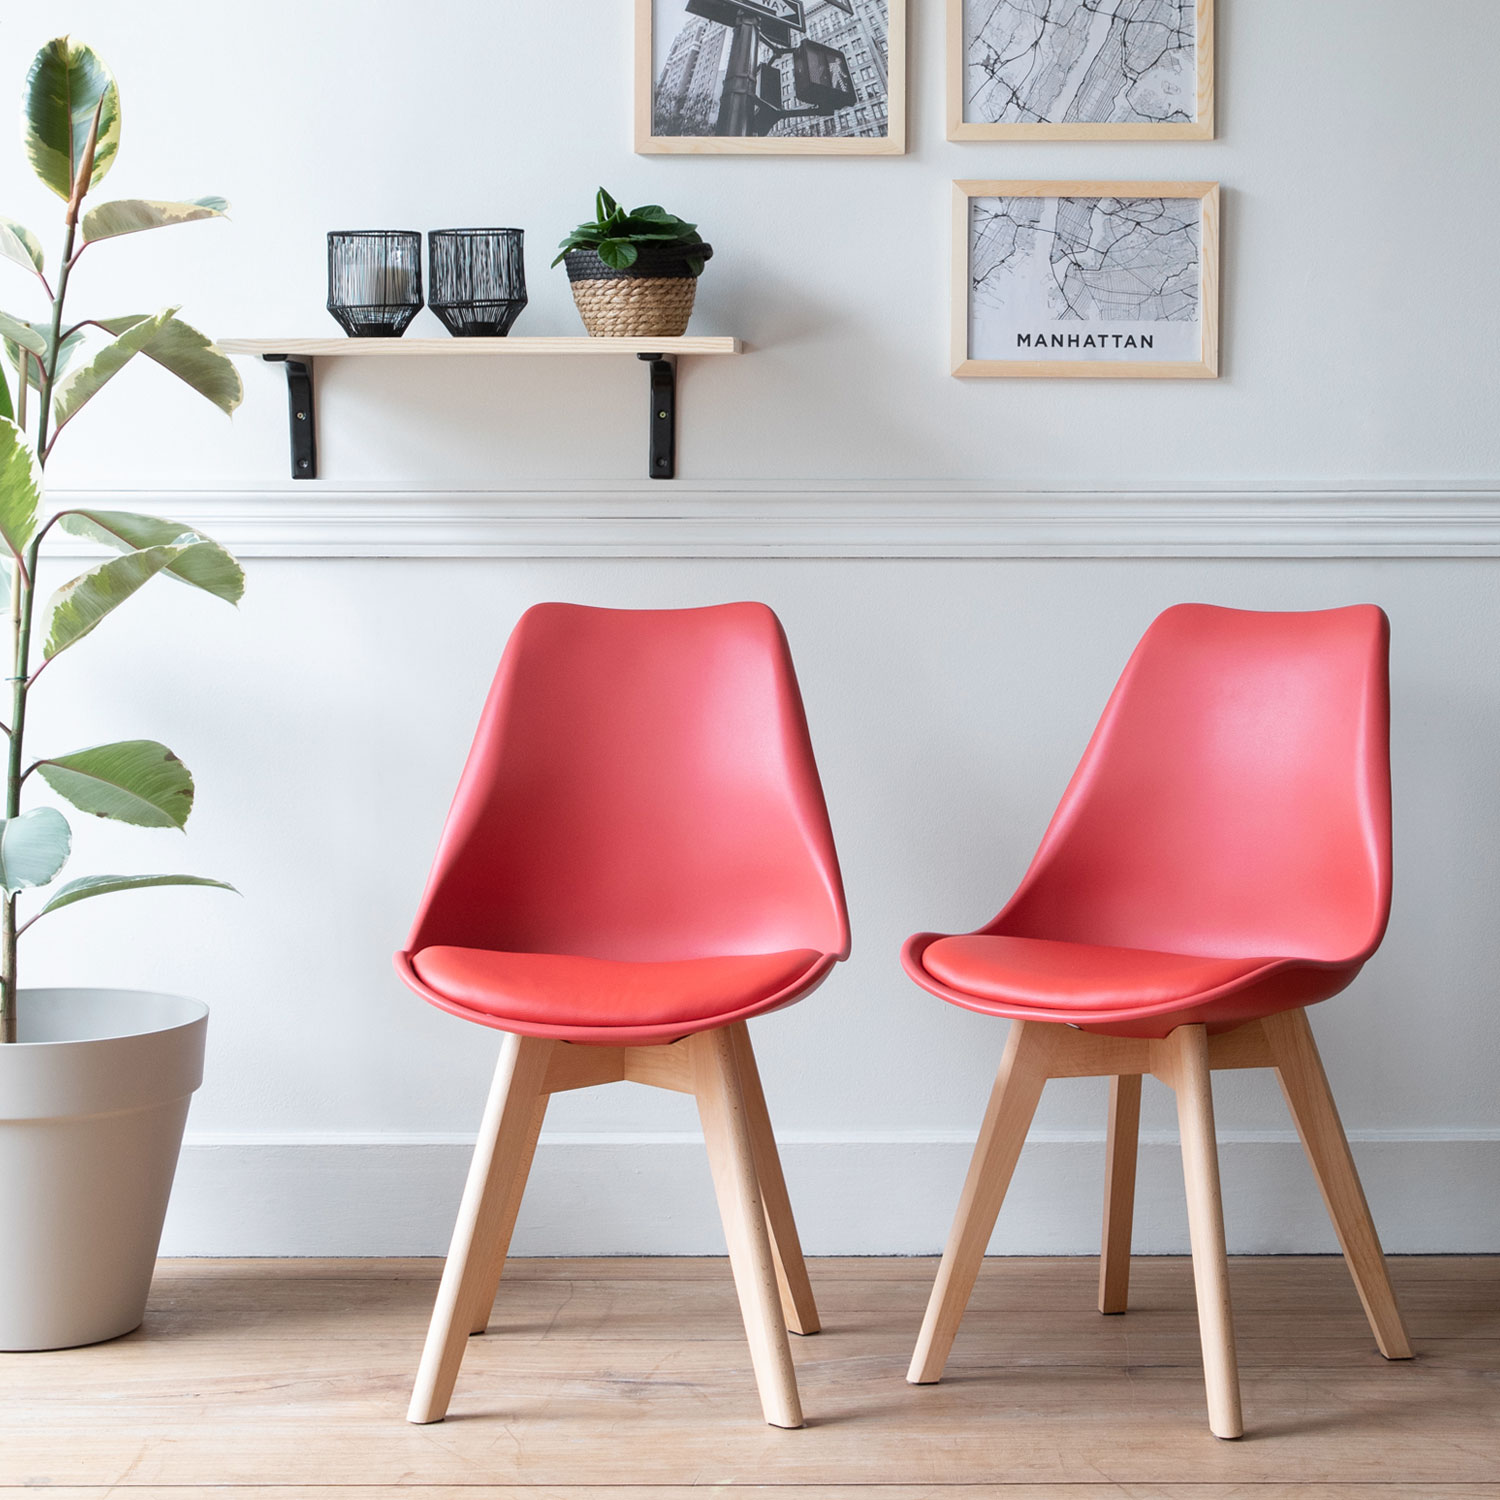 Lote de 2 sillas escandinavas NORA color rojo con cojín